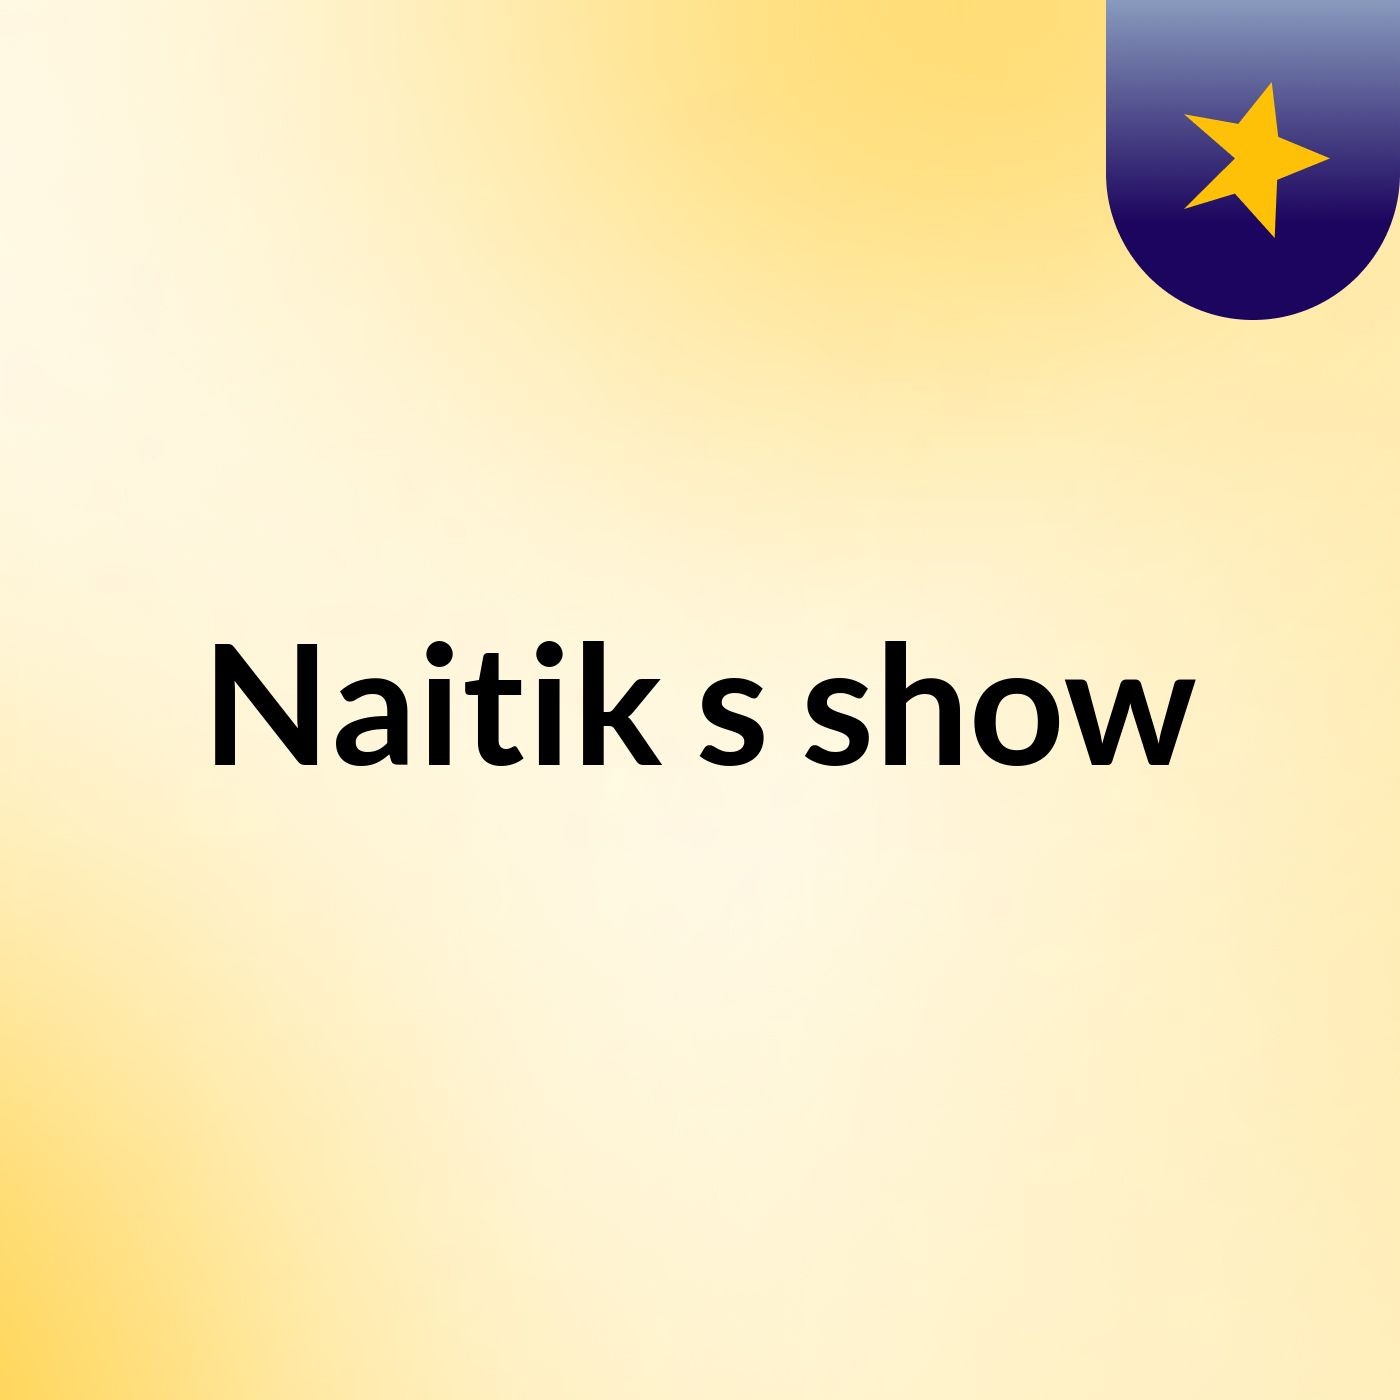 Naitik's show